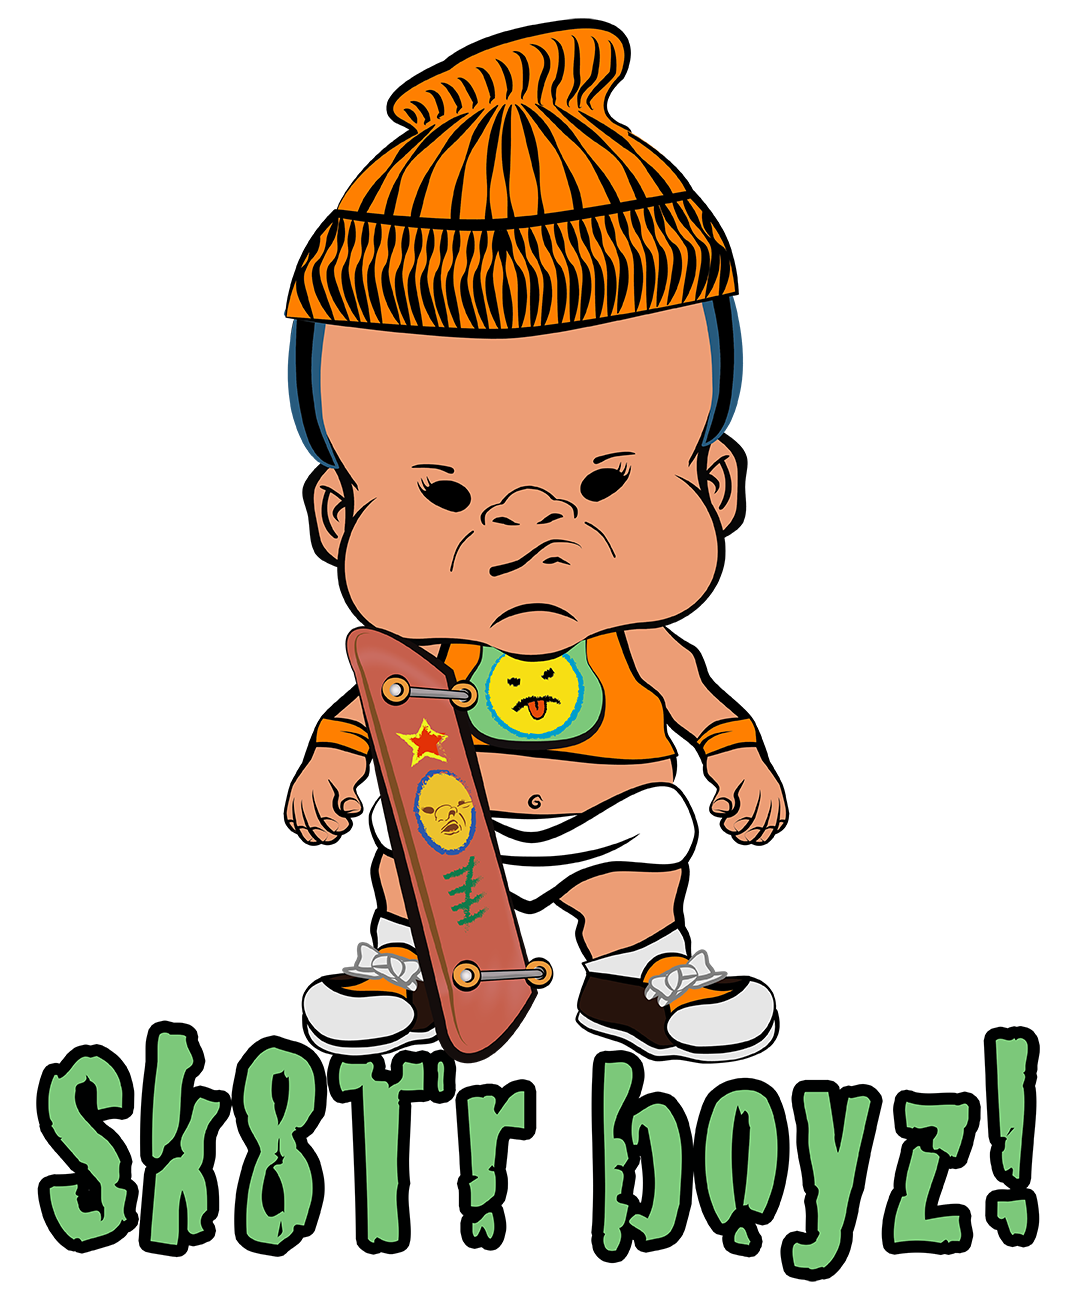 PBYZ0963_Skaterz_skater boyz_boy_13